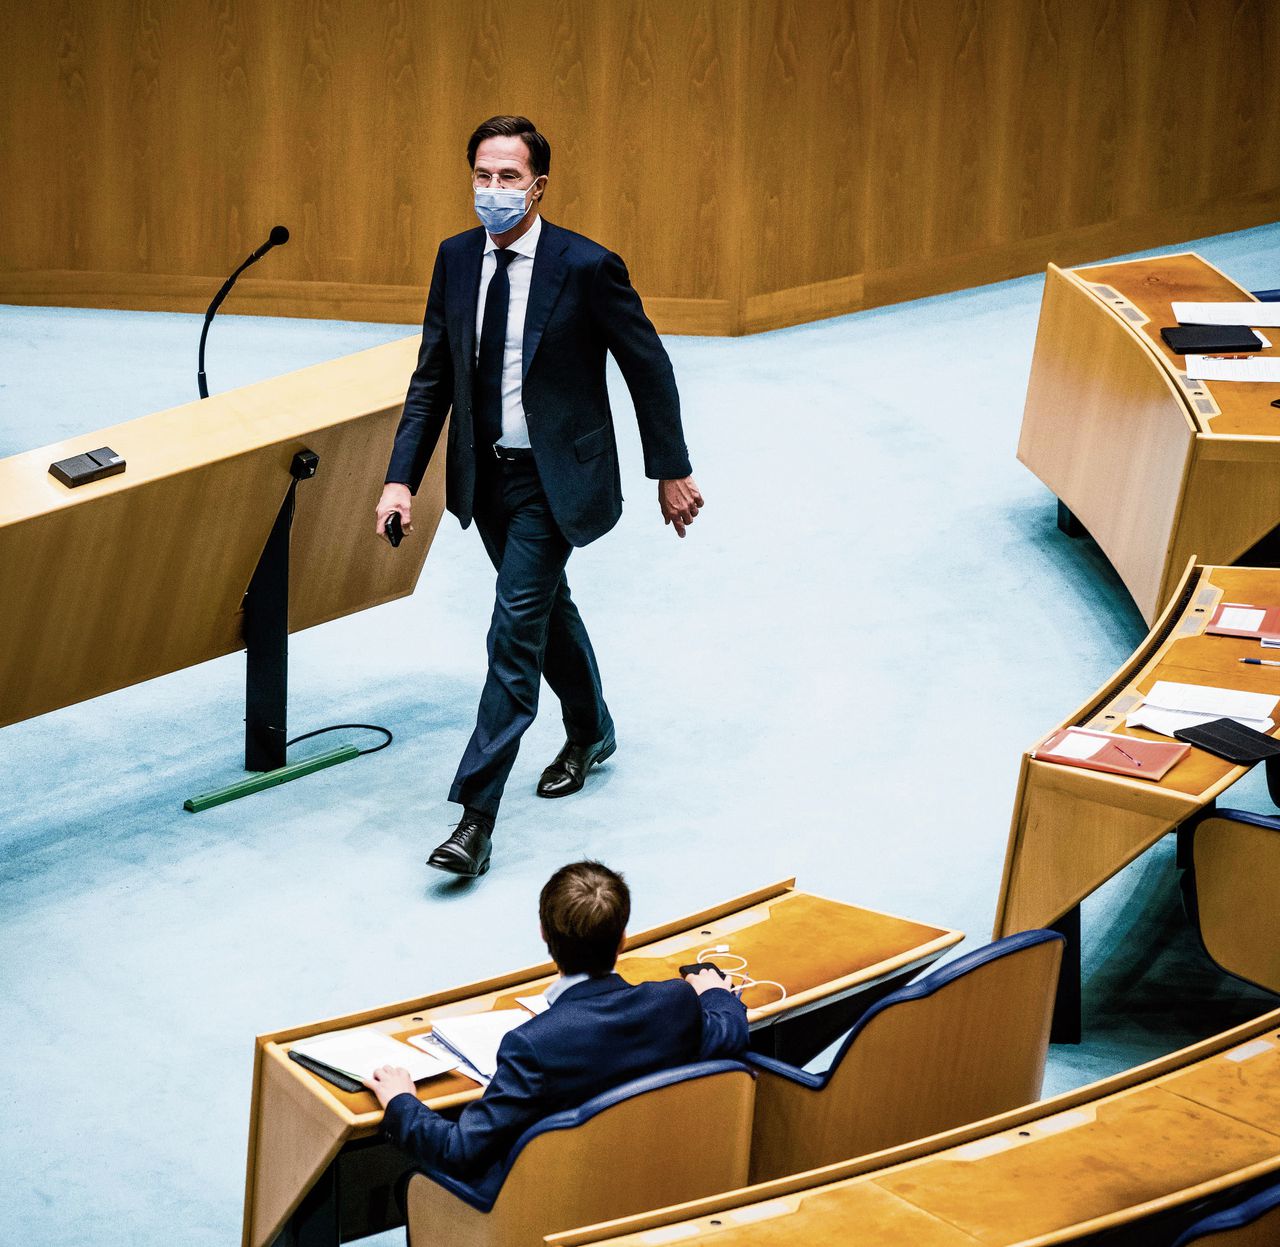 Demissionair premier Mark Rutte tijdens het Verantwoordingsdebat in de Tweede Kamer over 2020.